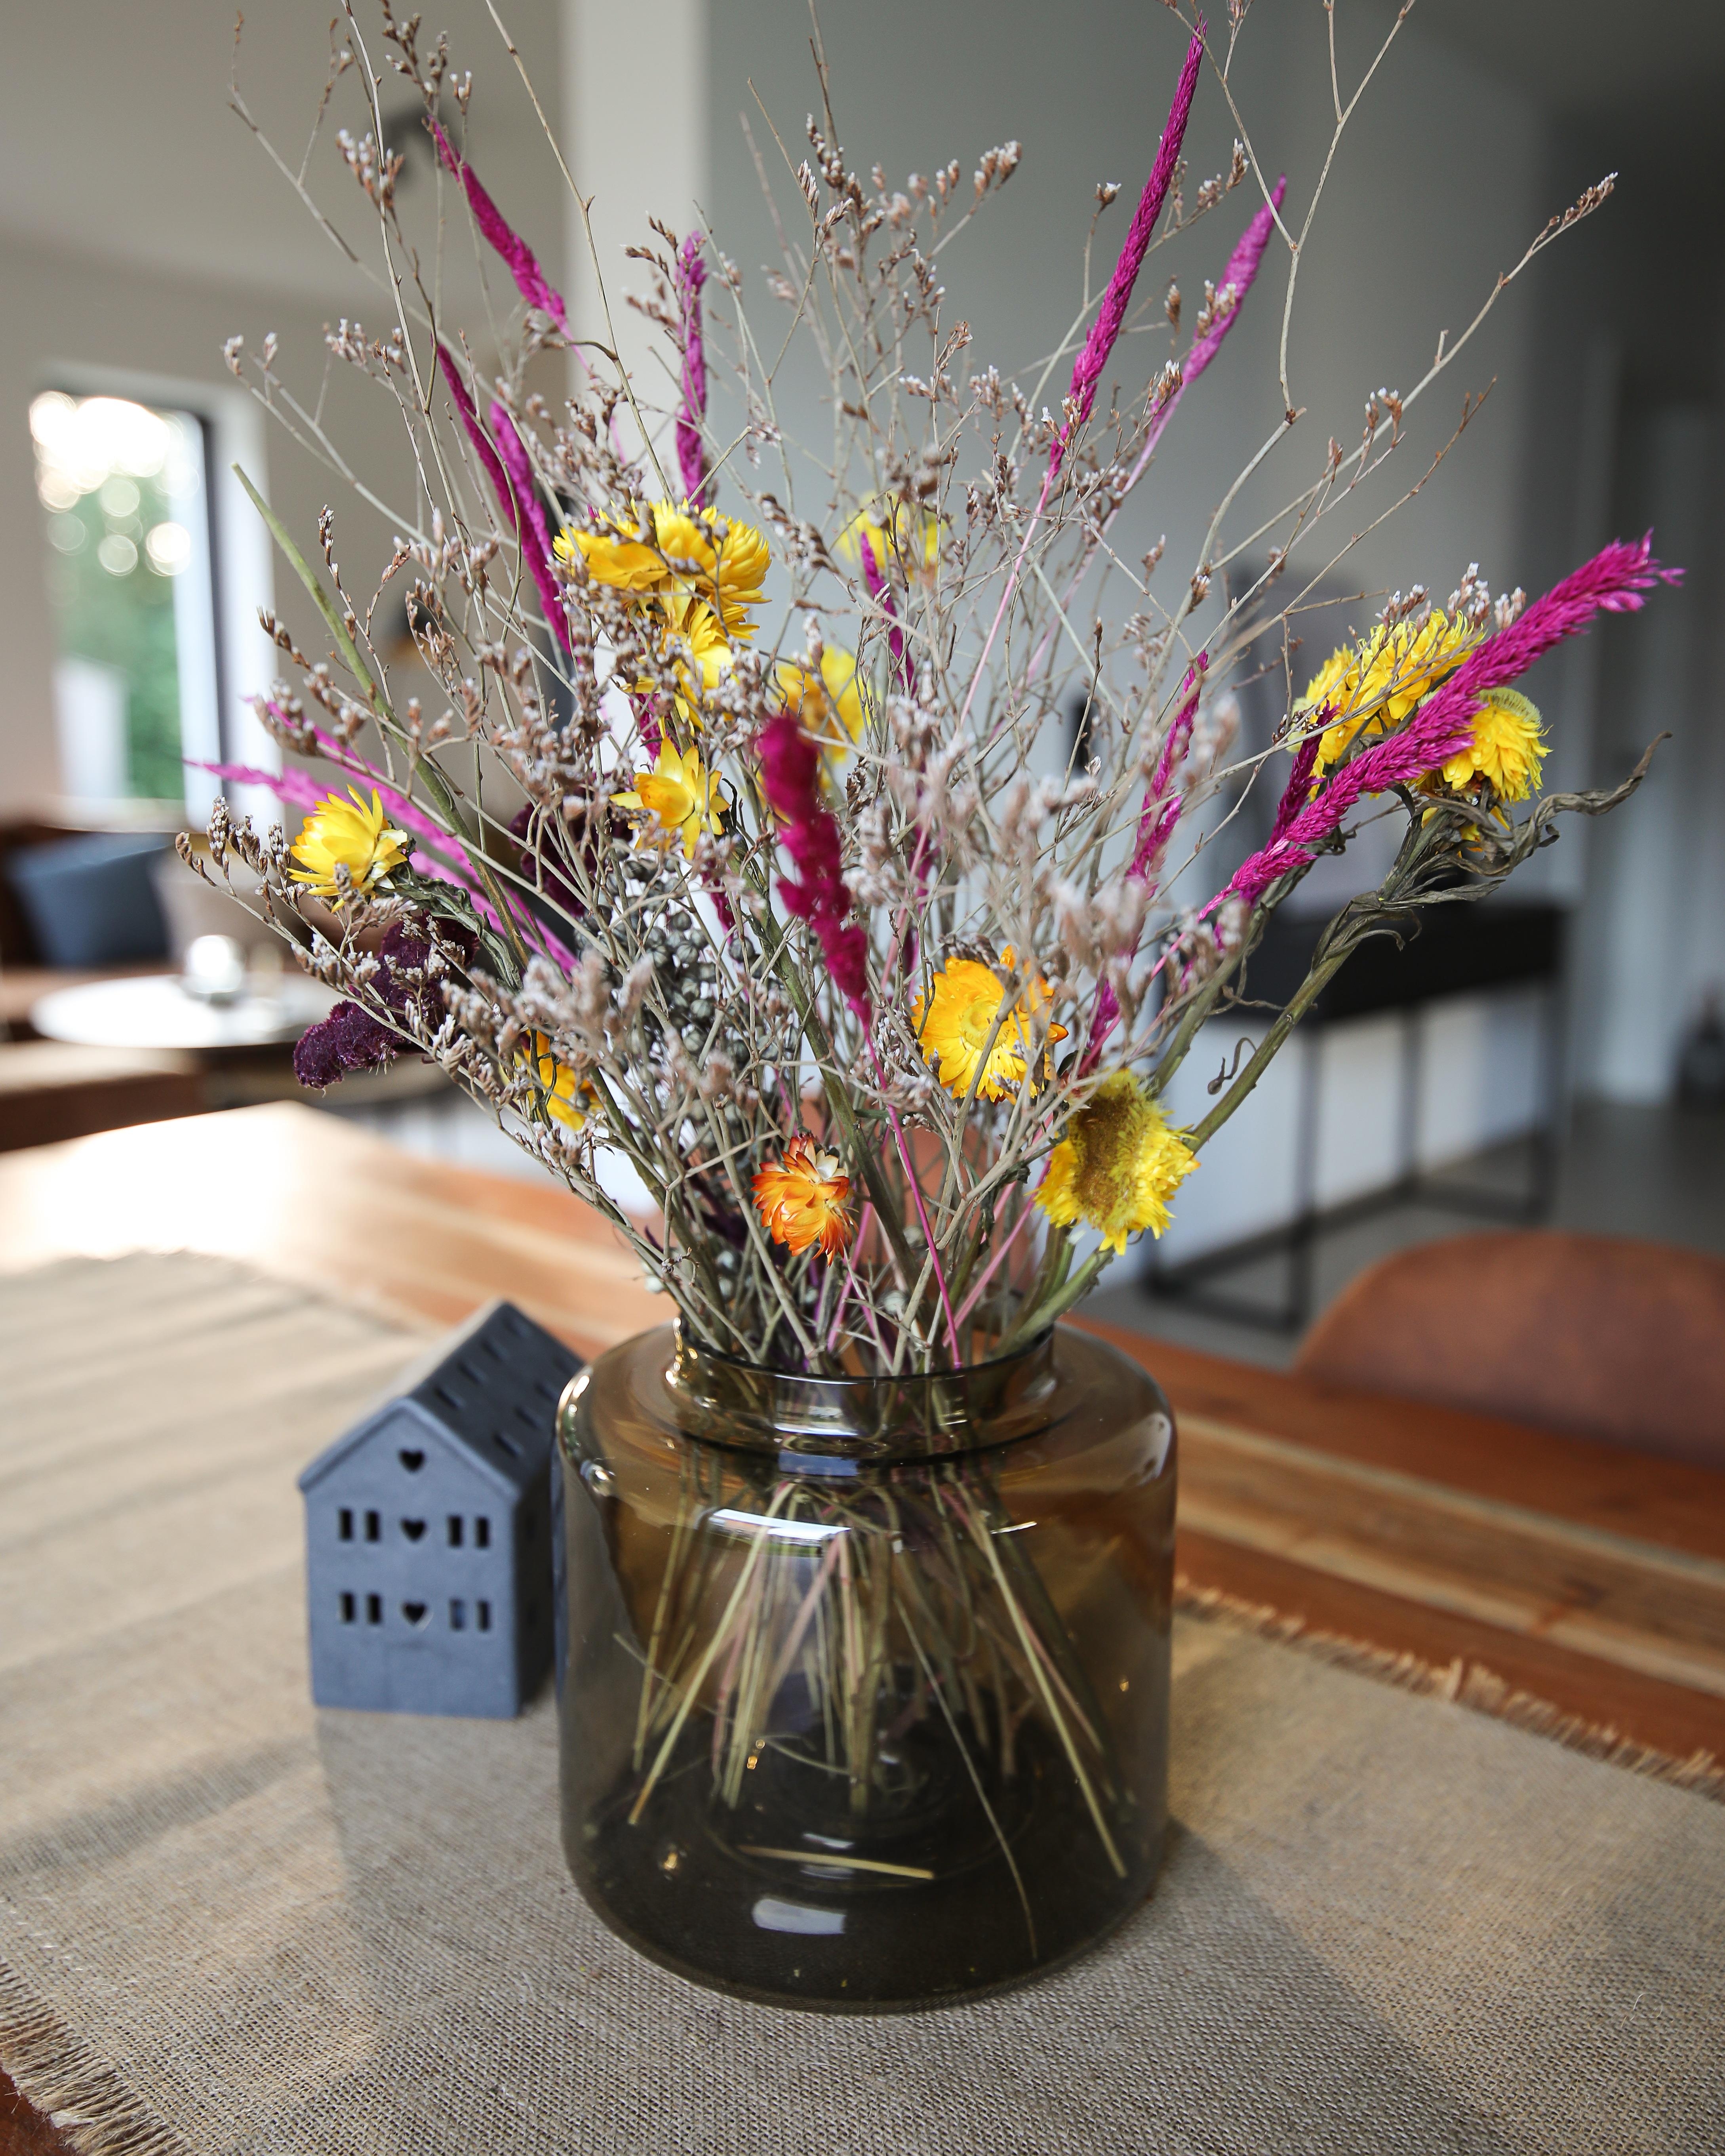 #deko #trockenblumen #vase #ikea #wohnzimmer #essbereich #dekoliebe #dekoinspiration